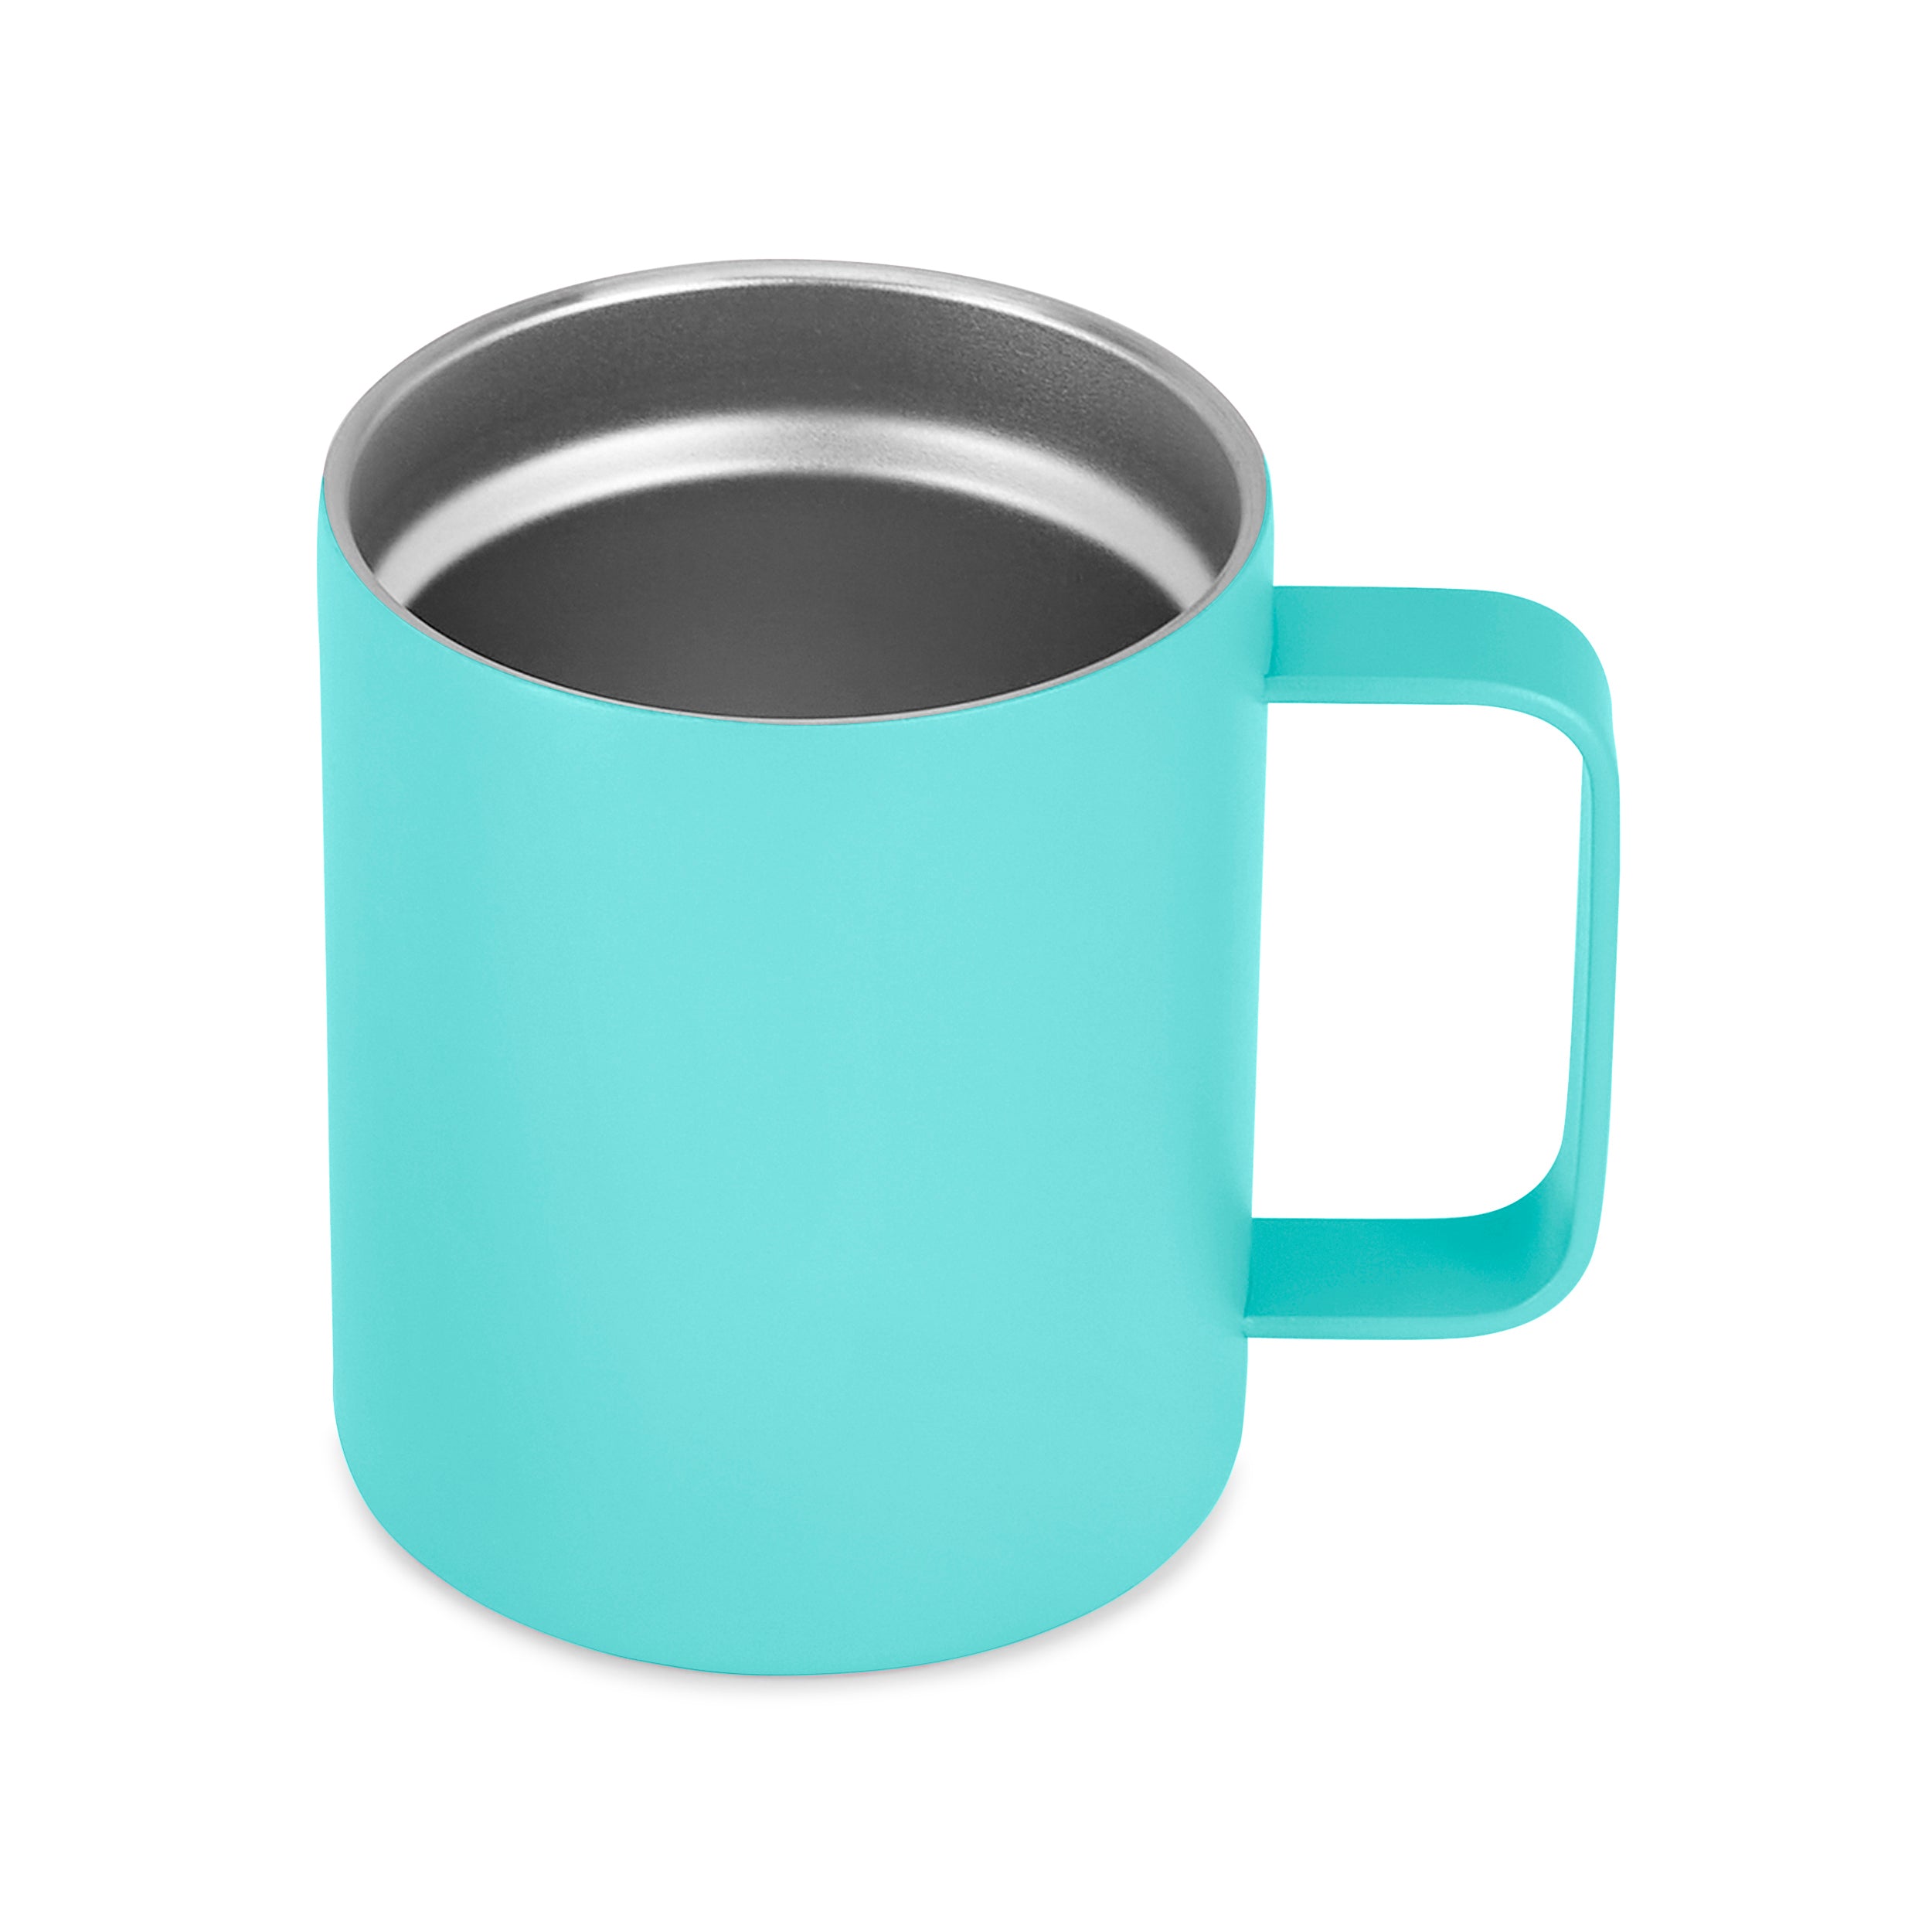 12oz Coffee Mug- Full of Humor